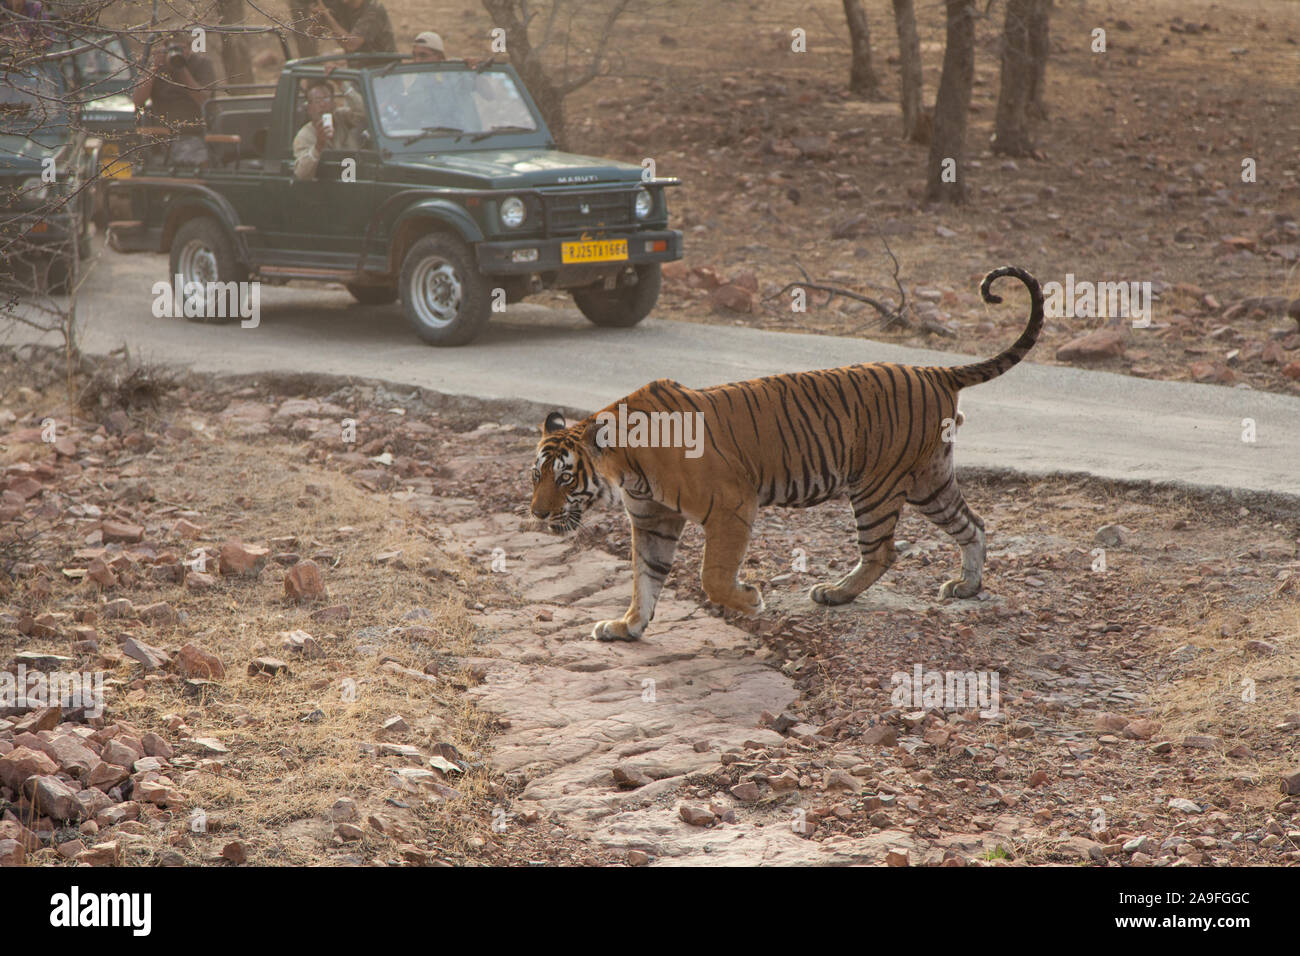 Les touristes en safari photographier un tigre sauvage dans le parc national de Ranthambore, en Inde Banque D'Images